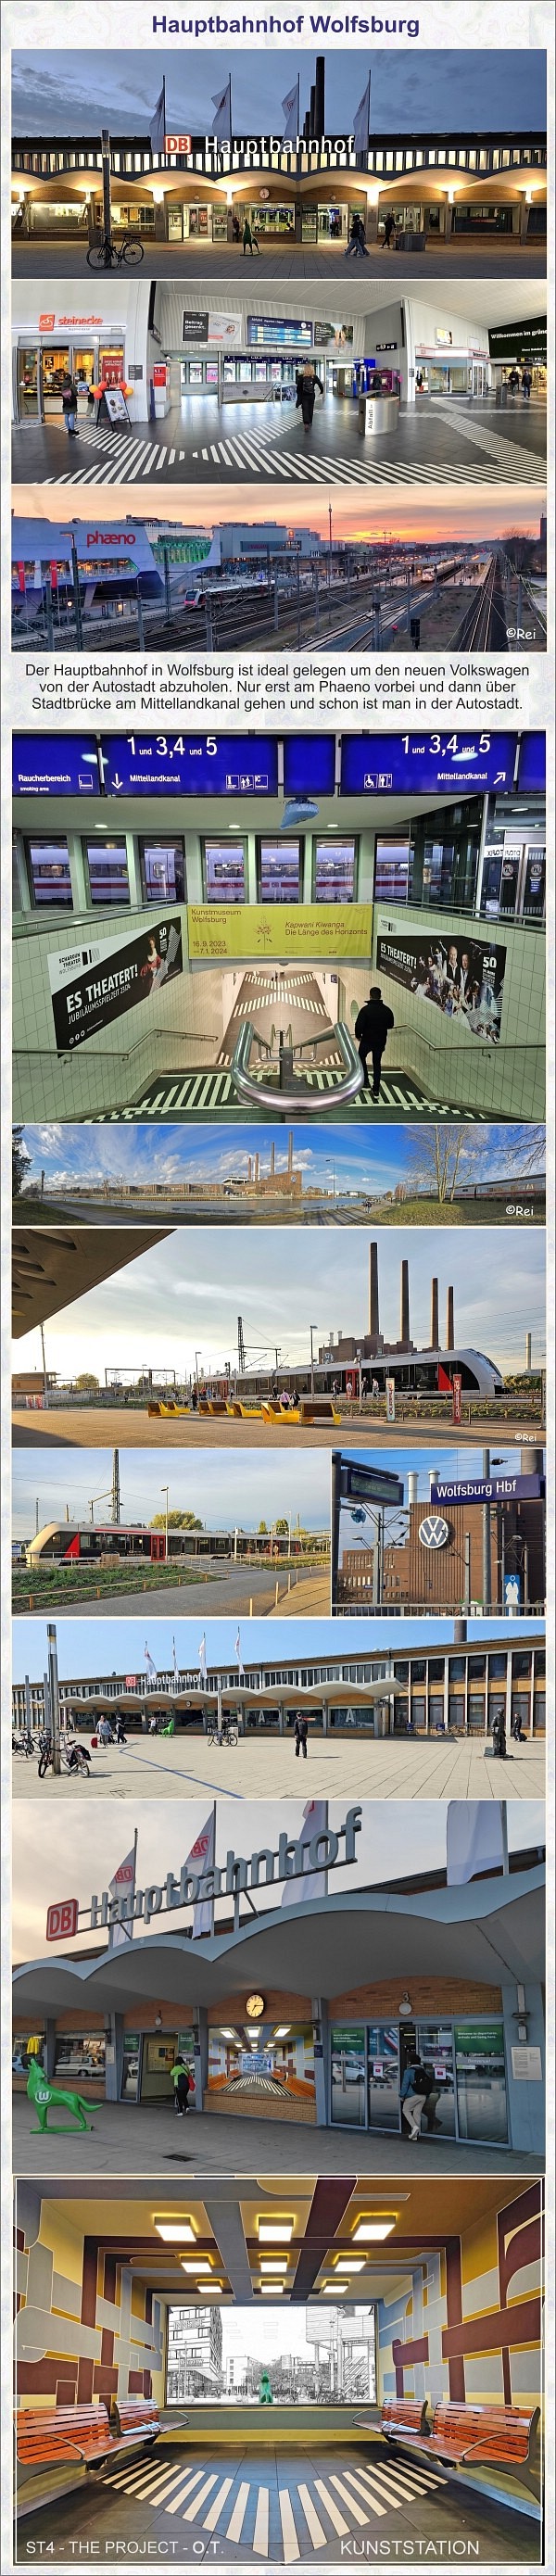 Hauptbahnhof Wolfsburg